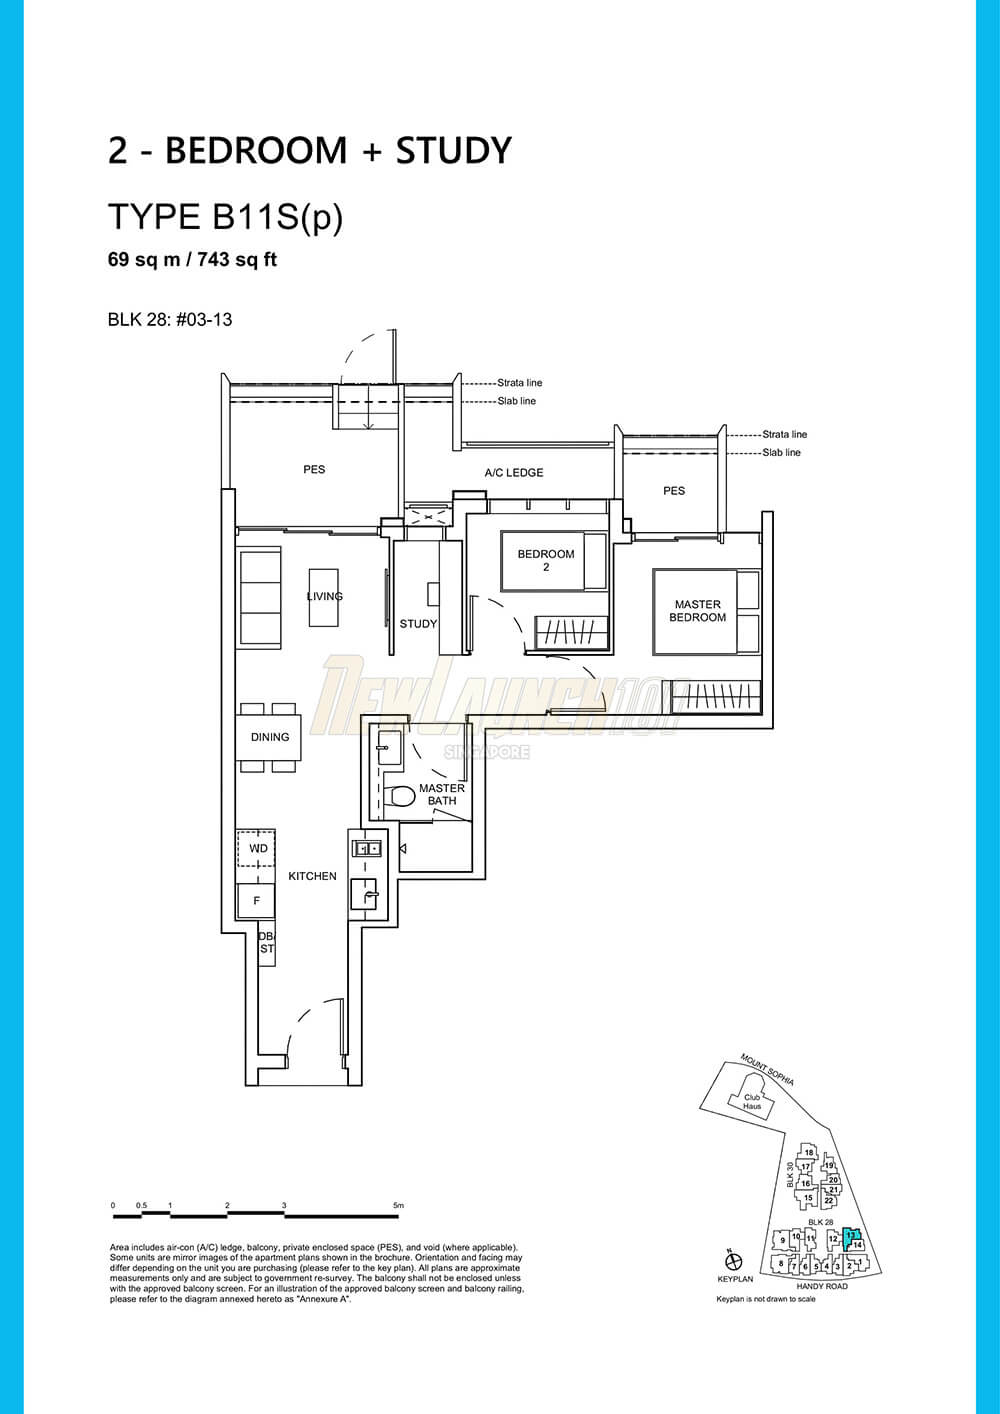 Haus on Handy Floor Plan 2-Bedroom Study Type B11Sp